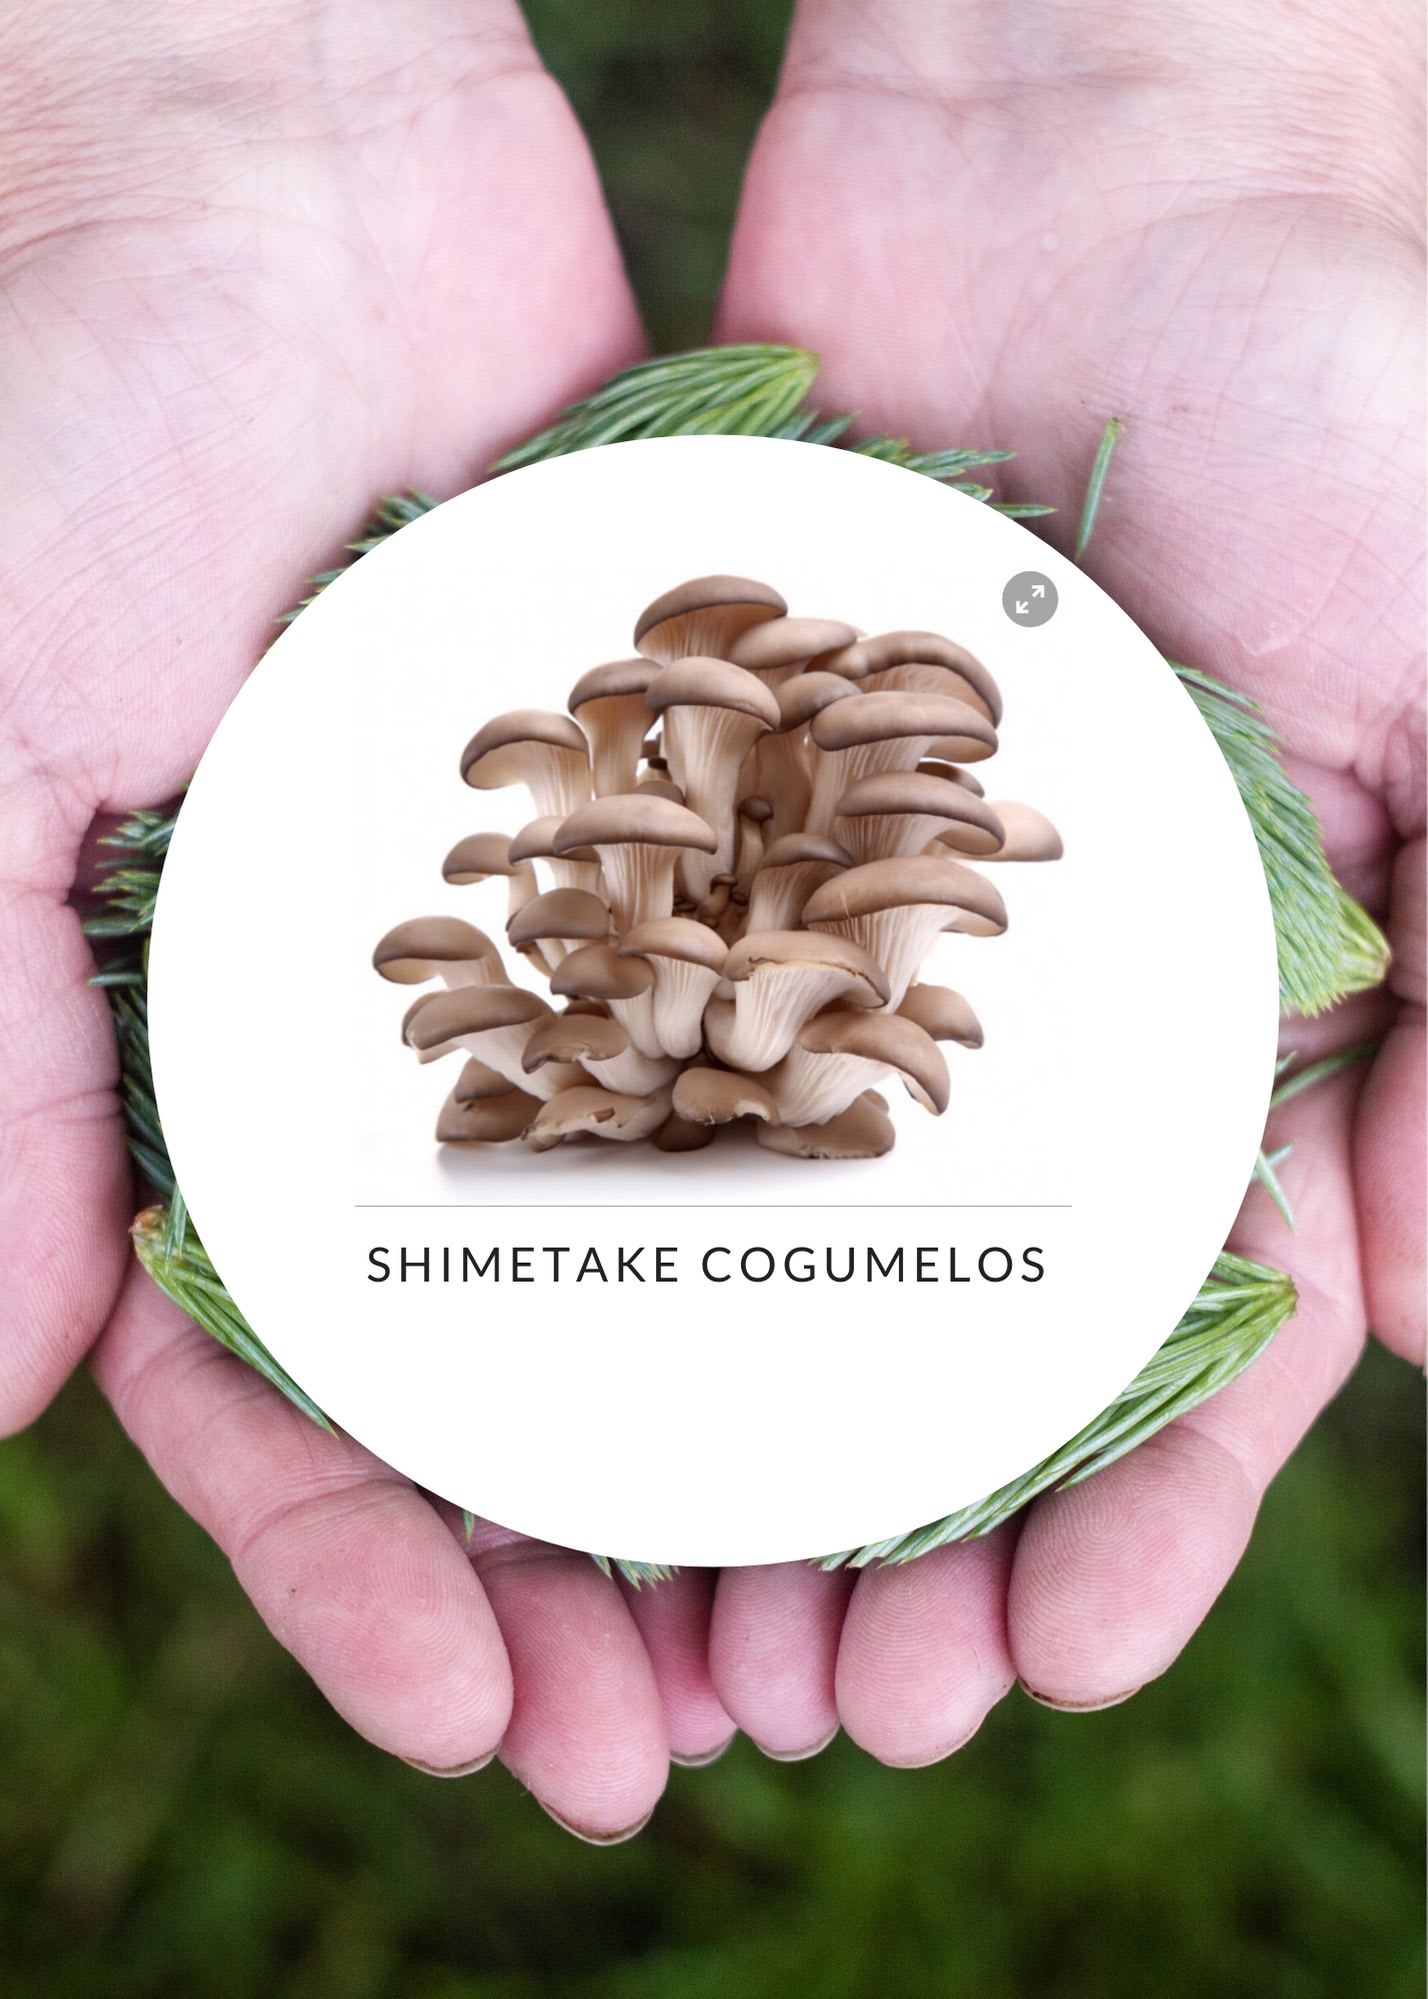 Shimetake Cogumelos